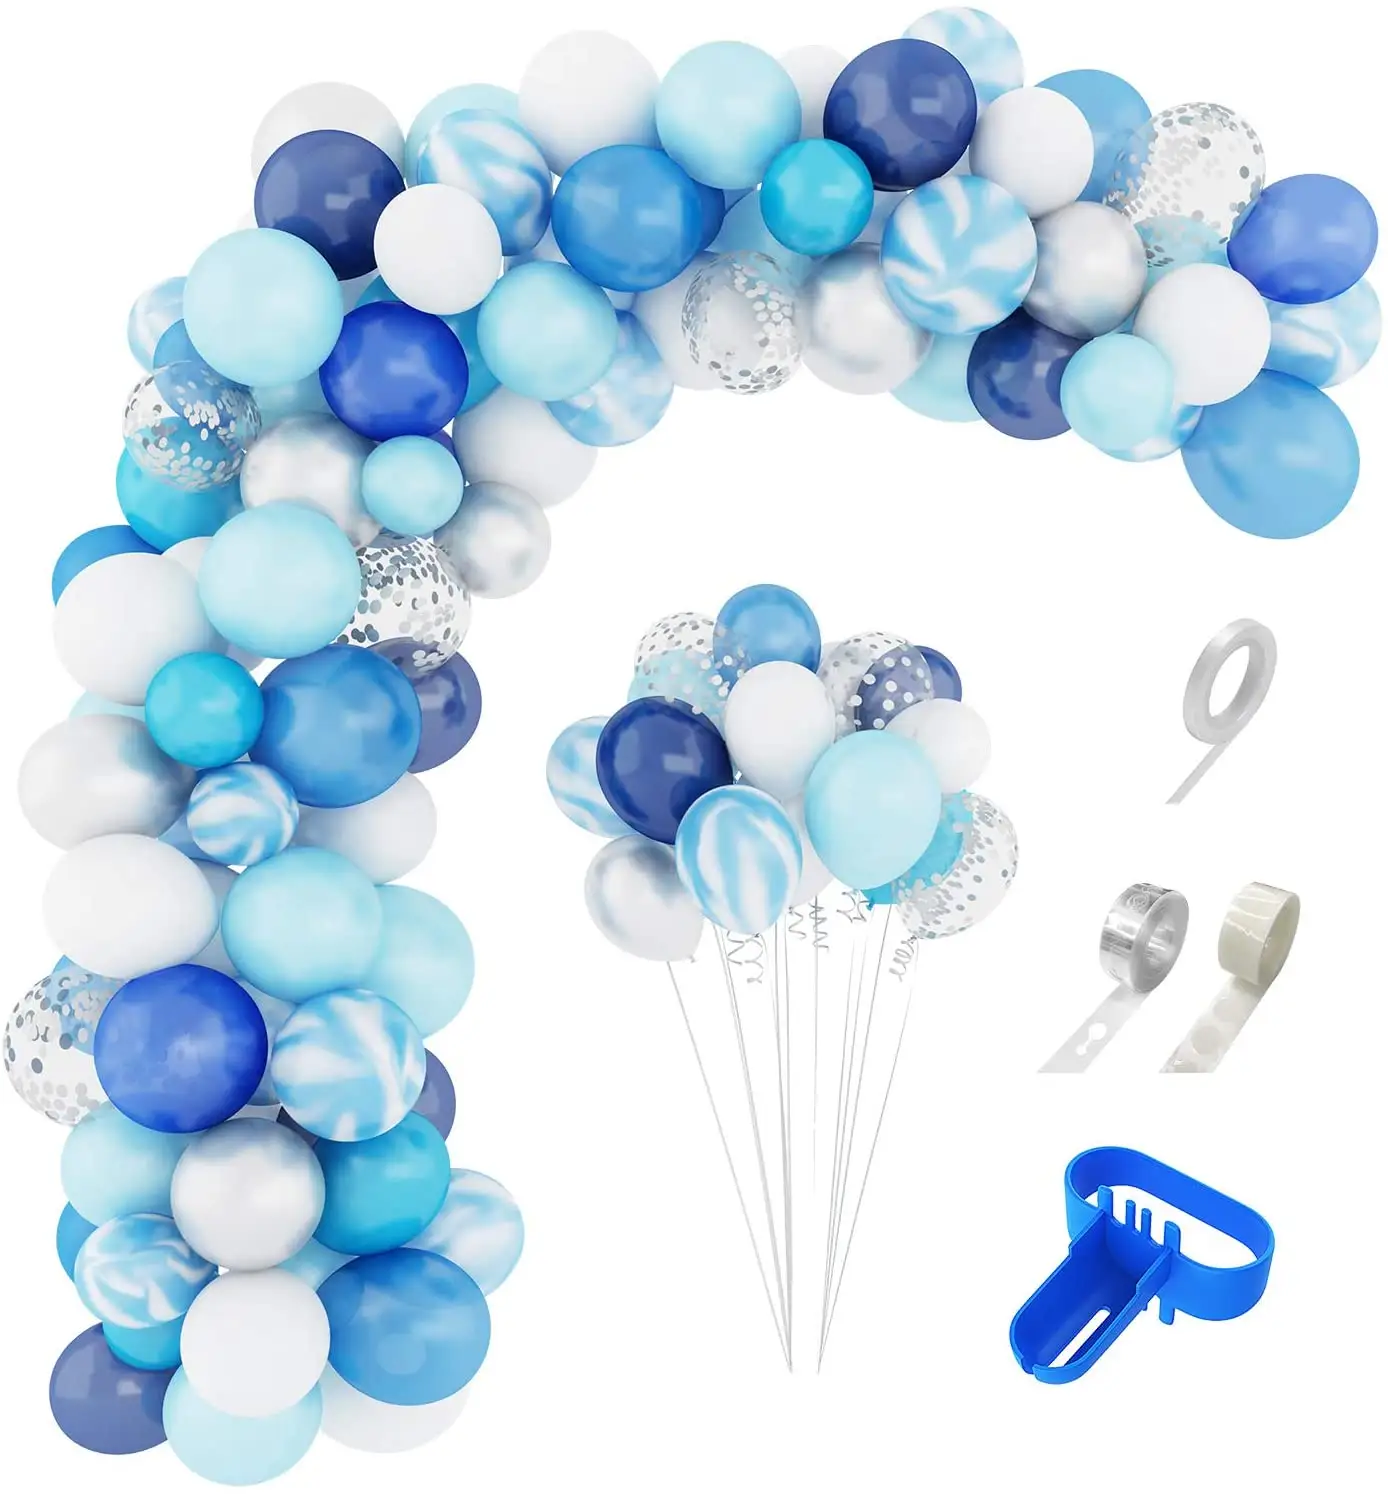 जन्मदिन शादी की पार्टी के विभिन्न प्रकार के लिए नीले गुब्बारे लड़का विषय जन्मदिन गुब्बारा कट्टर किट बनाने